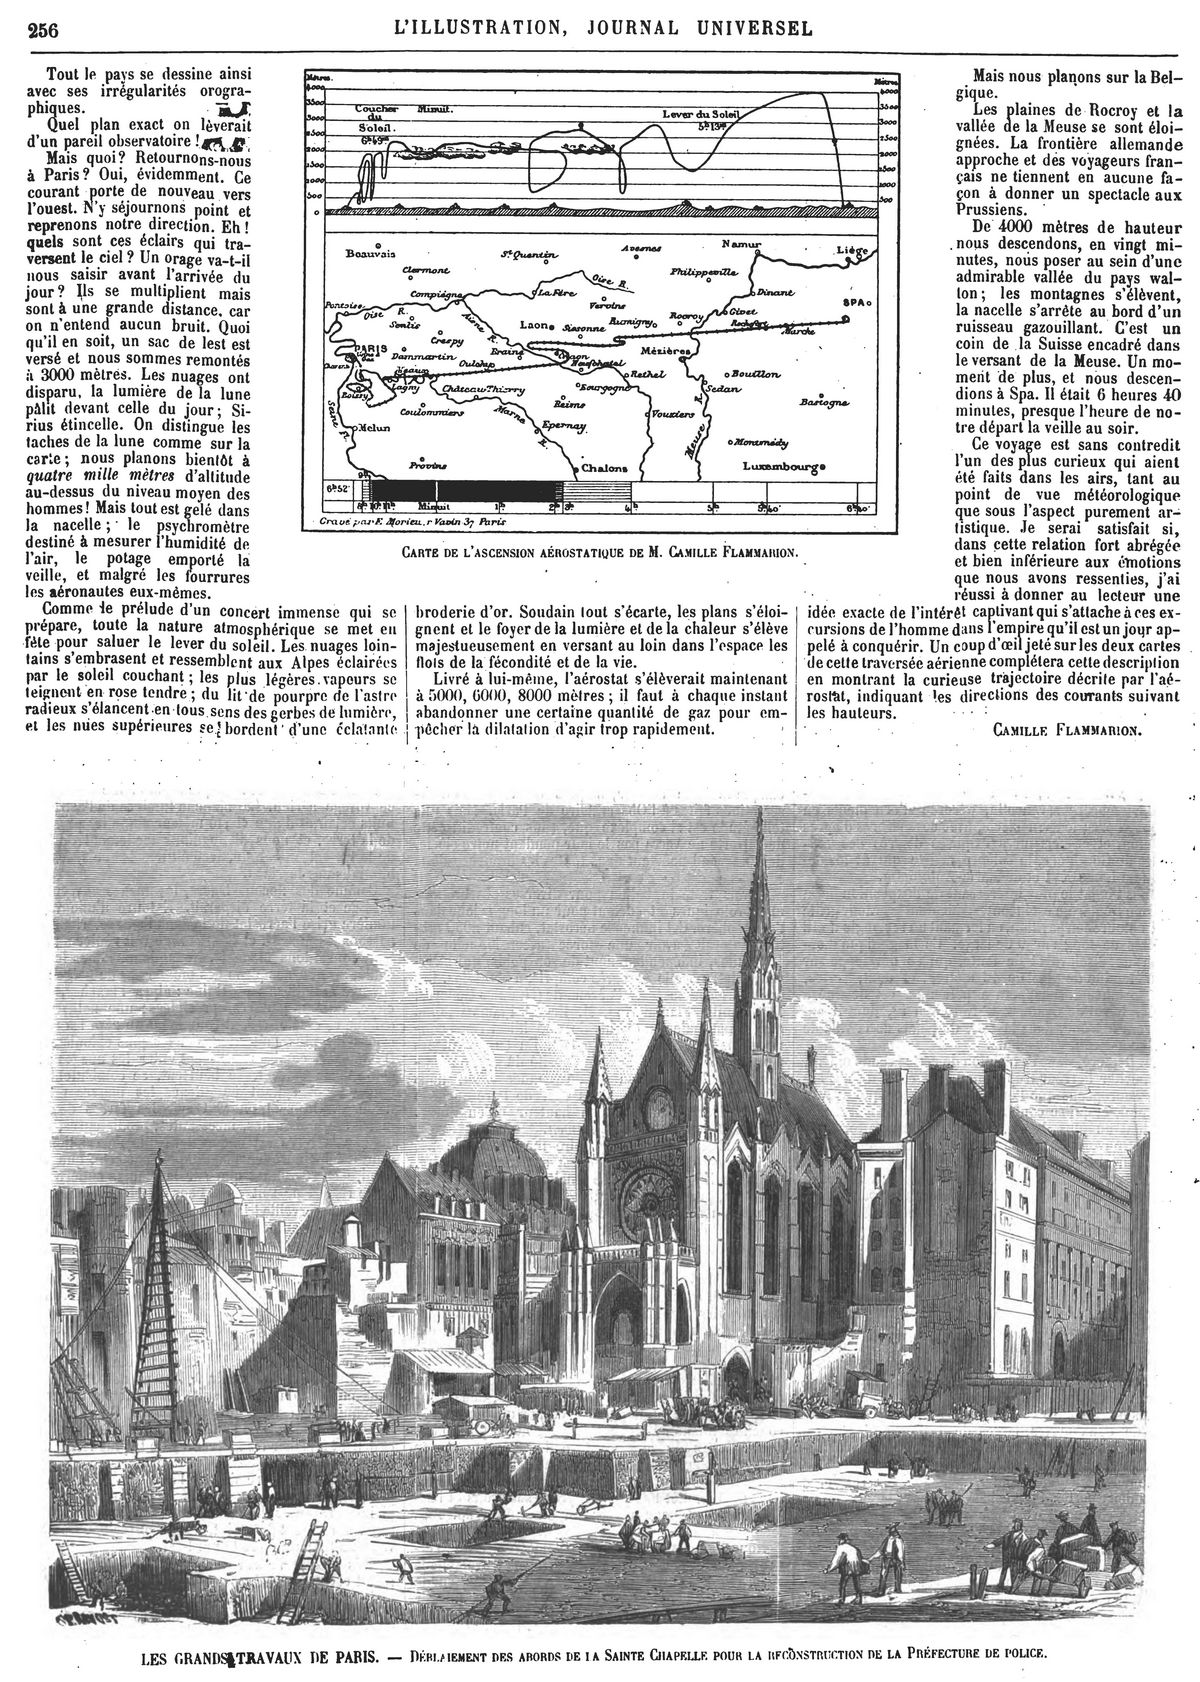 Les grands travaux de Paris : déblaiement des abords de la Sainte Chapelle pour la reconstruction de la Préfecture de police. (gravure 1874)